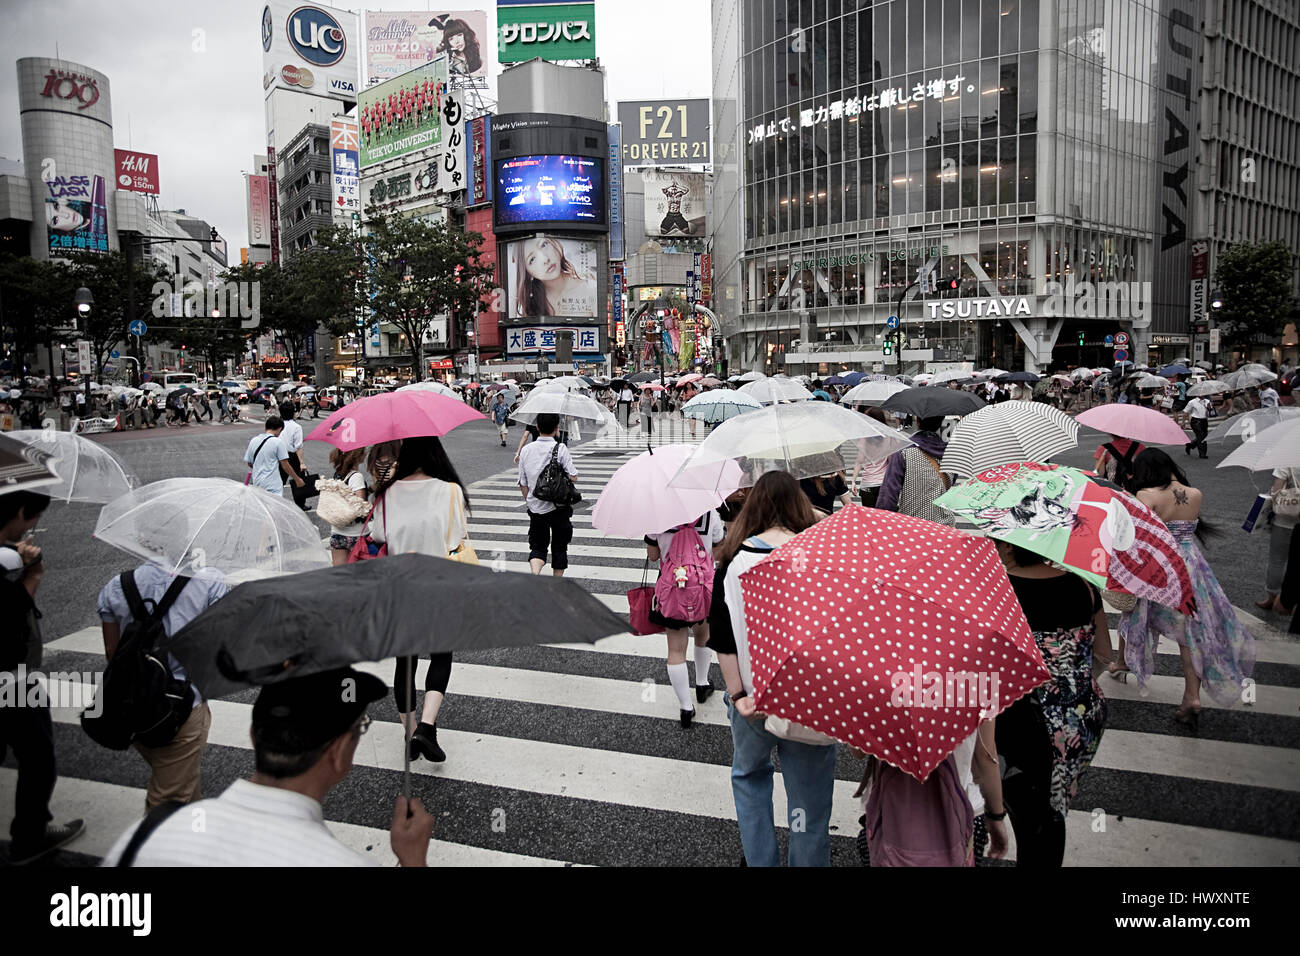 Jour de pluie dans le quartier de Shibuya, Tokyo. Shibuya est célèbre pour l'un des centres de la mode du Japon pour les jeunes et comme une importante vie nocturne. Banque D'Images